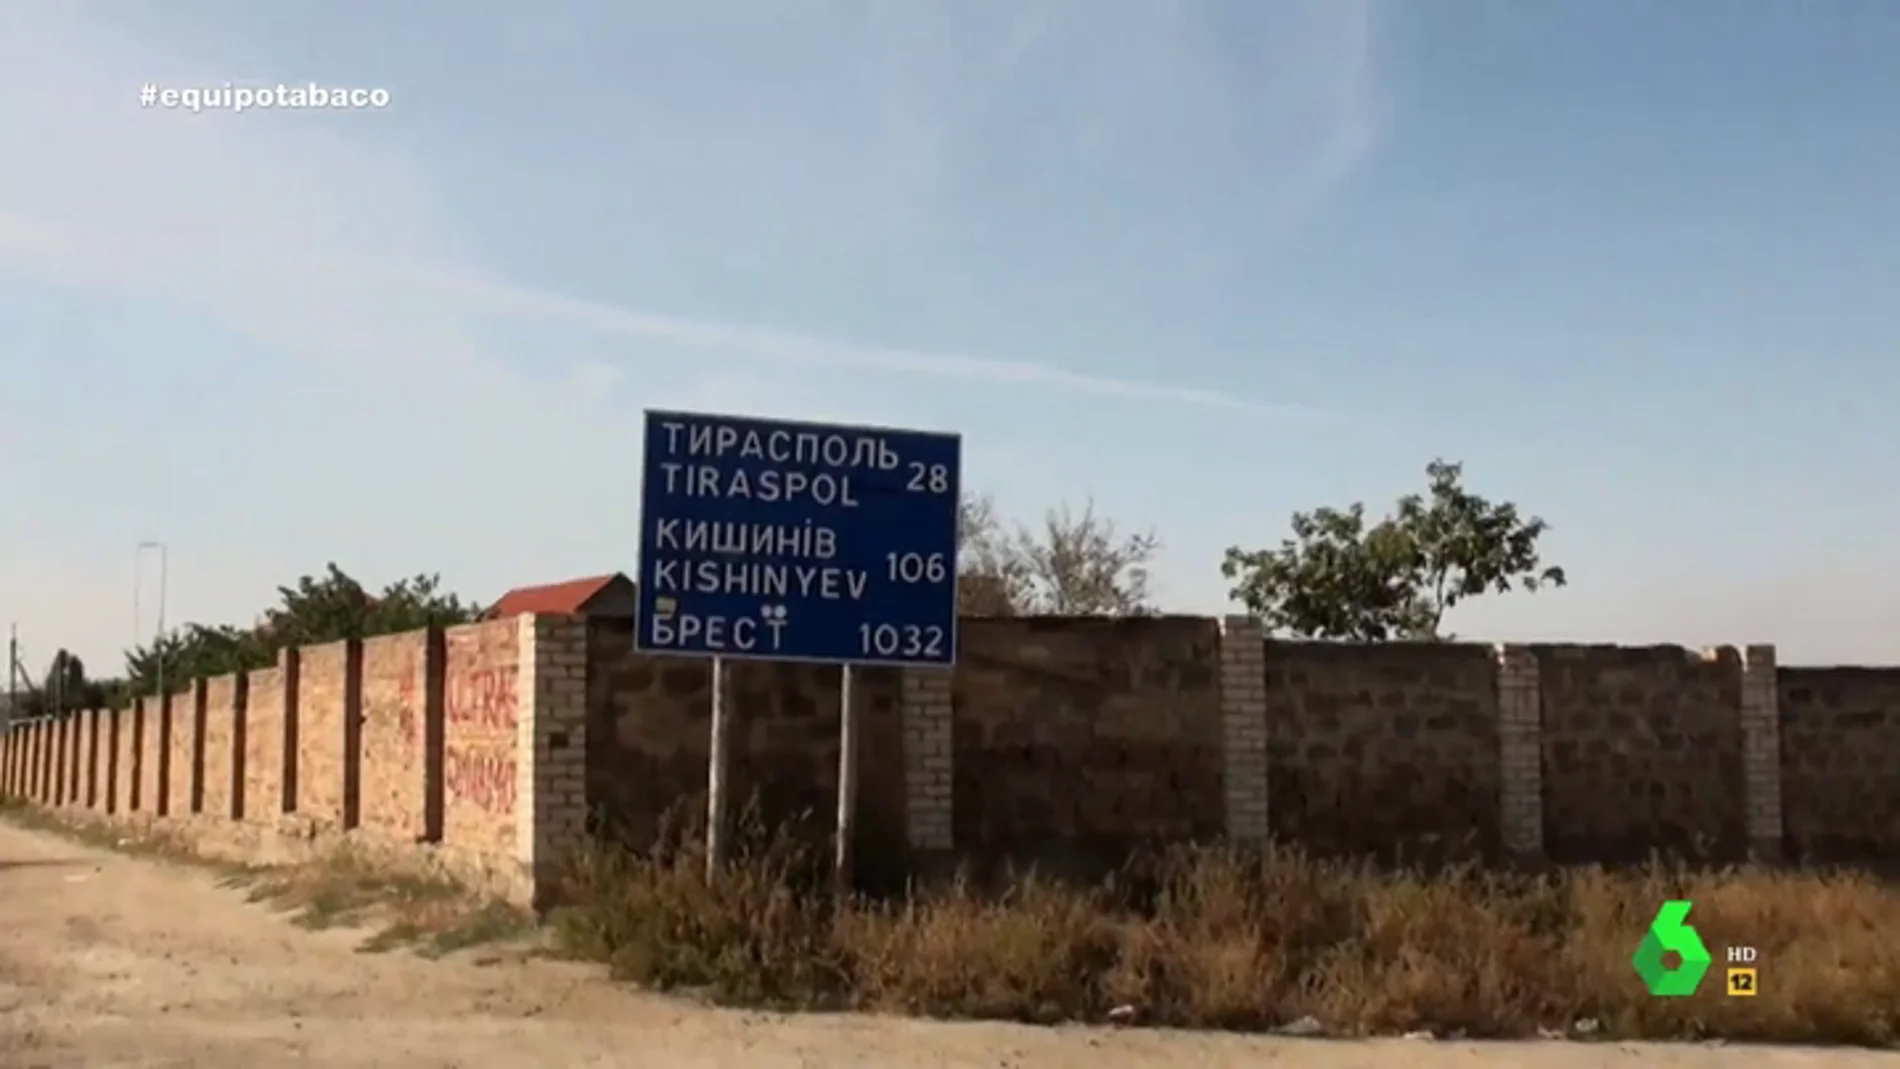 Transnistria, el lugar no reconocido de la ONU donde las mafias reclutan para las fábricas ilegales de tabaco